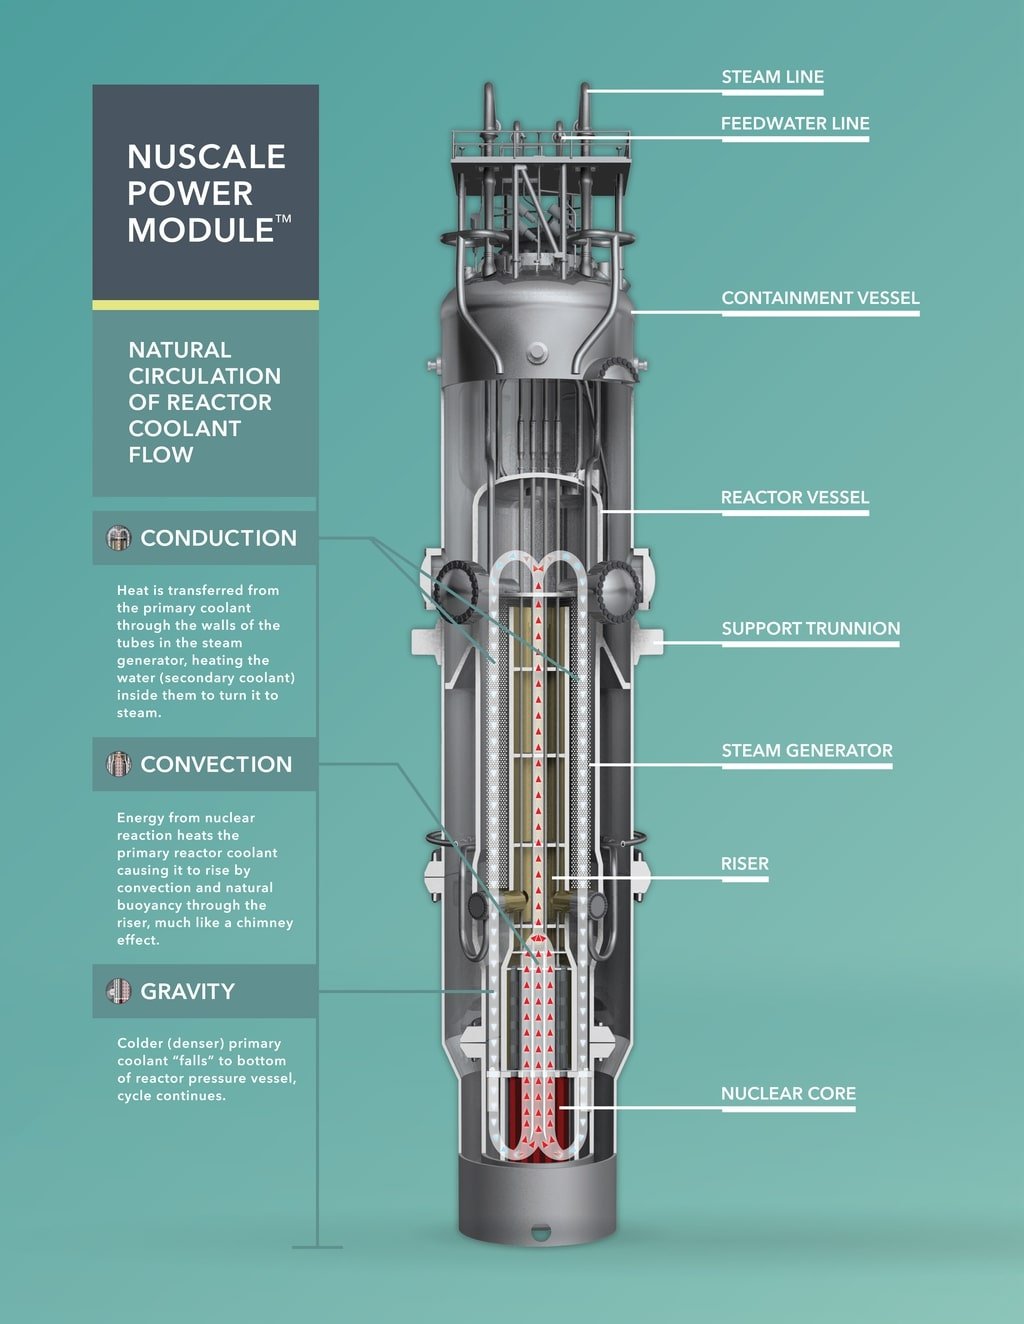 Εσθονική εταιρεία θα κατασκευάσει αρθρωτό πυρηνικό αντιδραστήρα ·  σημαντικό βήμα προς την ουδετερότητα του άνθρακα